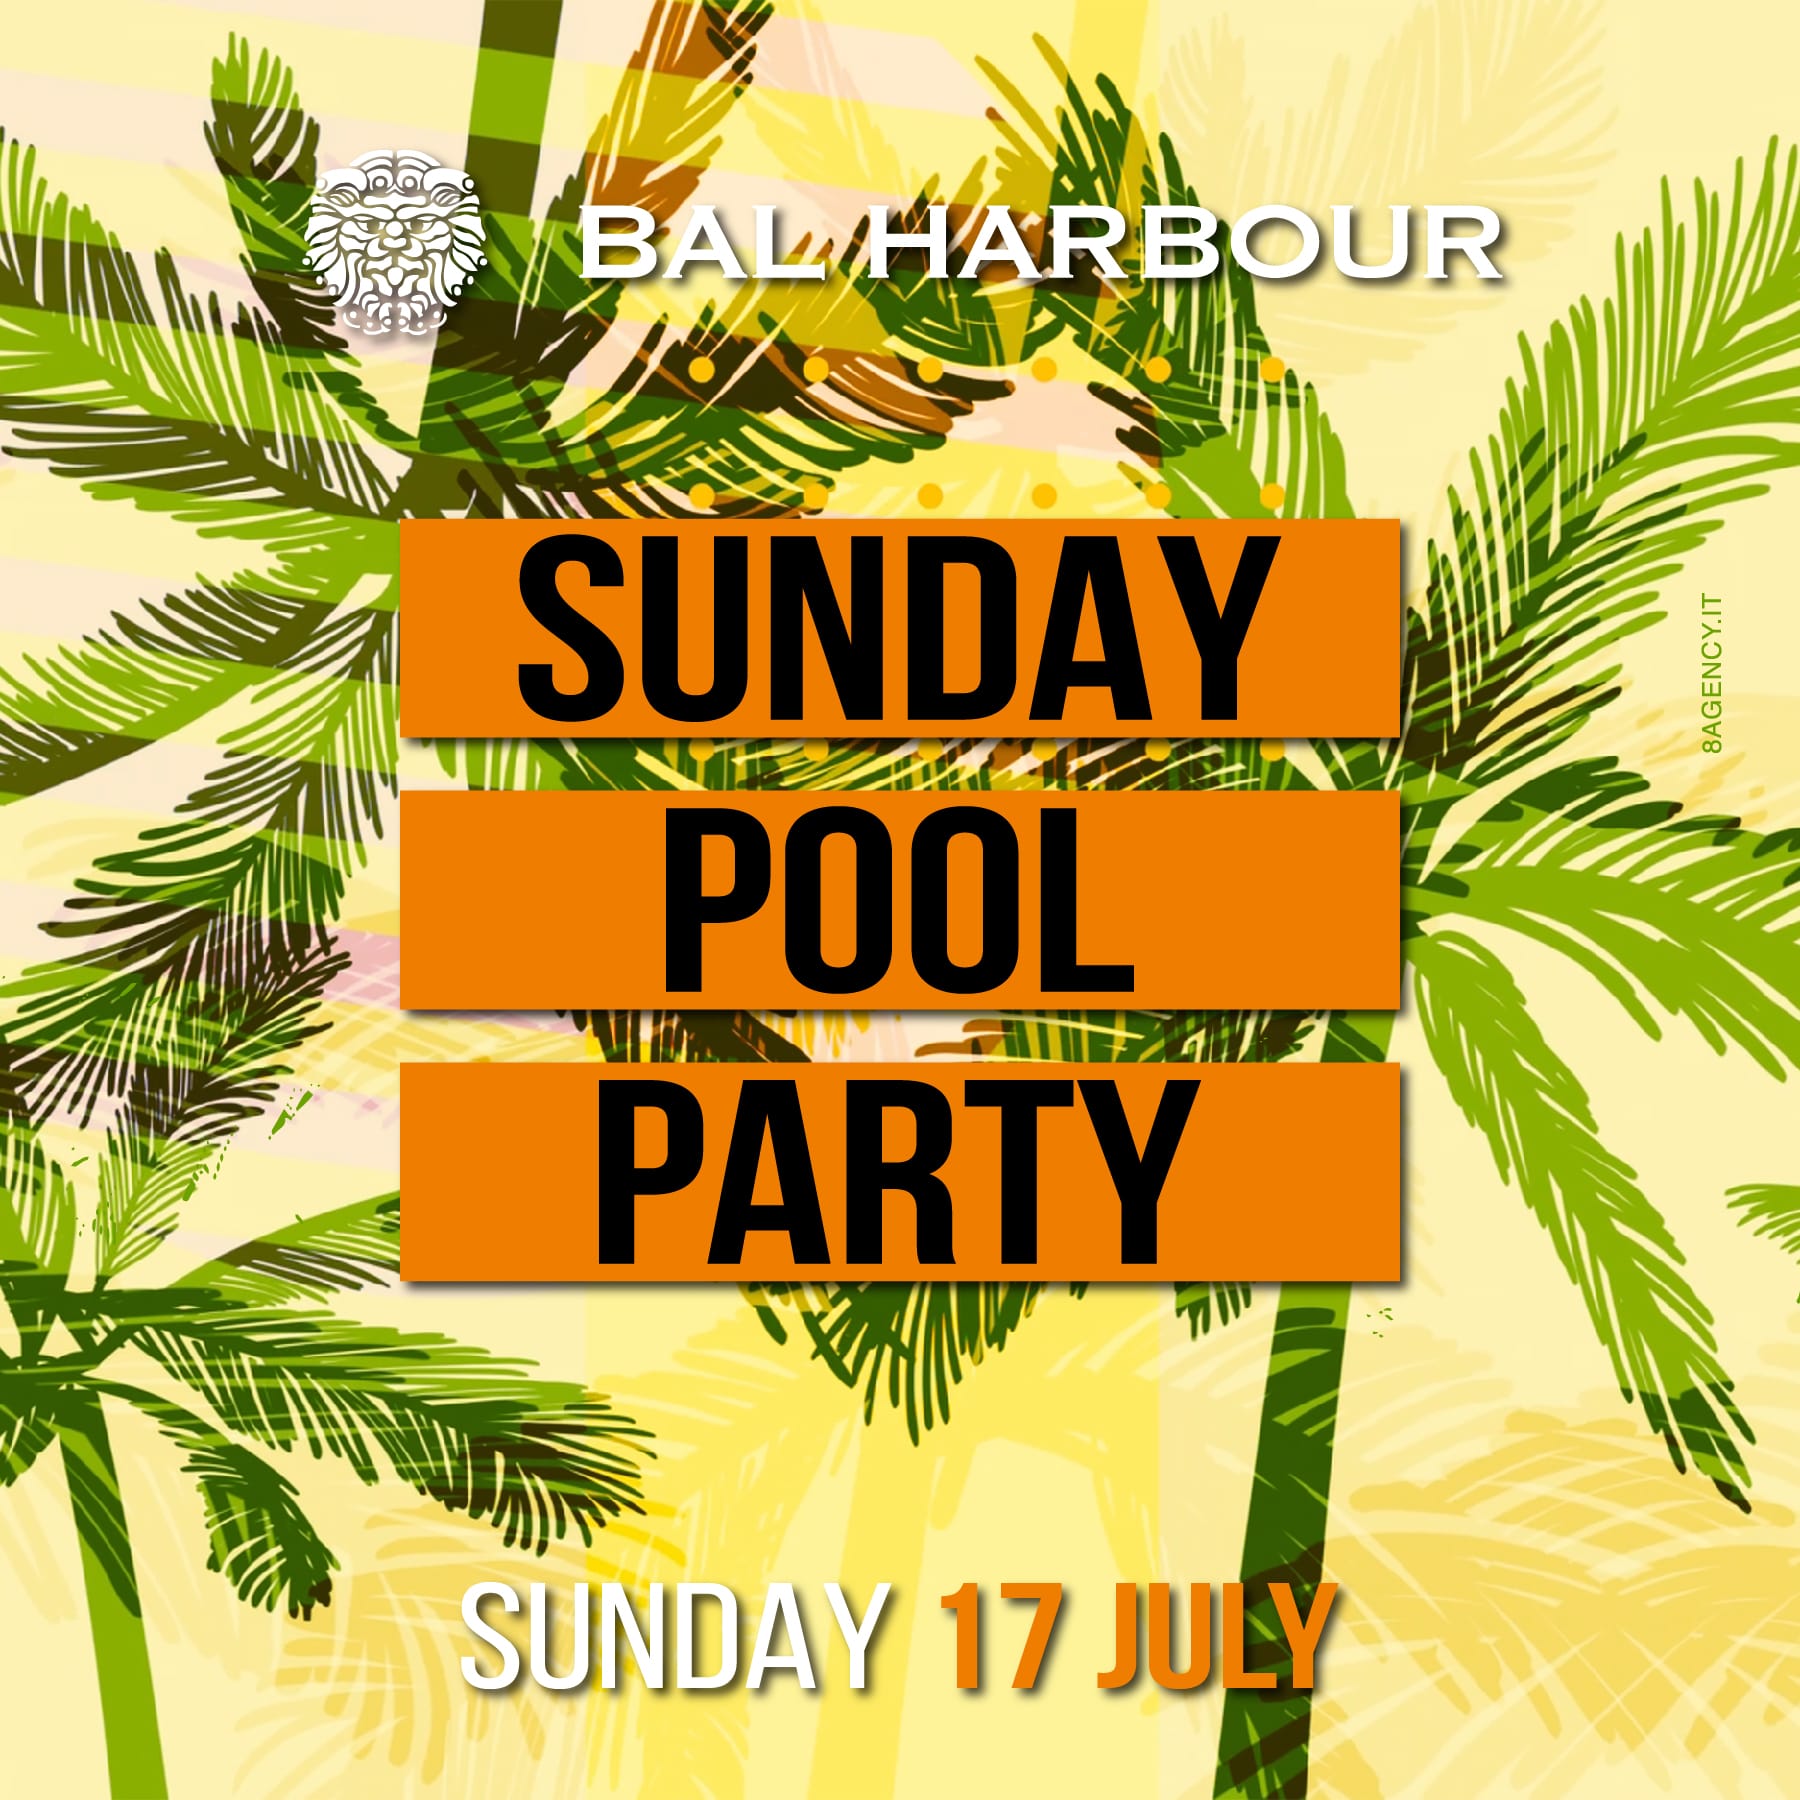 Pool Party Bal Harbour Domenica 17 Luglio Estate 2022